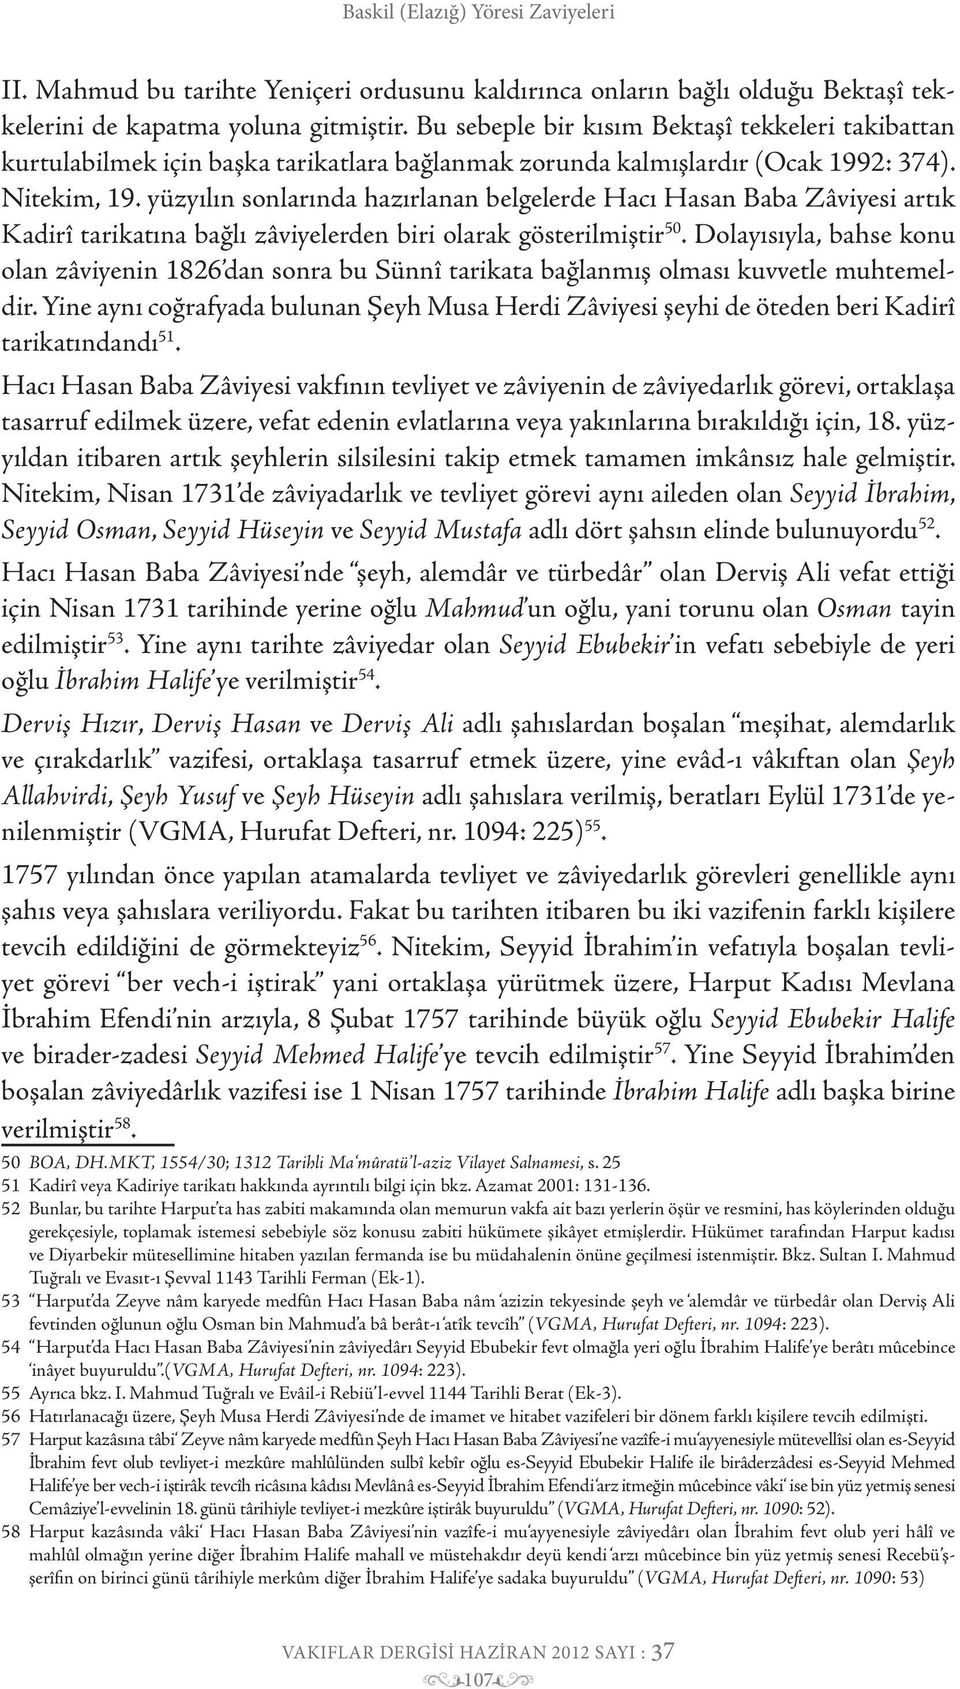 yüzyılın sonlarında hazırlanan belgelerde Hacı Hasan Baba Zâviyesi artık Kadirî tarikatına bağlı zâviyelerden biri olarak gösterilmiştir 50.